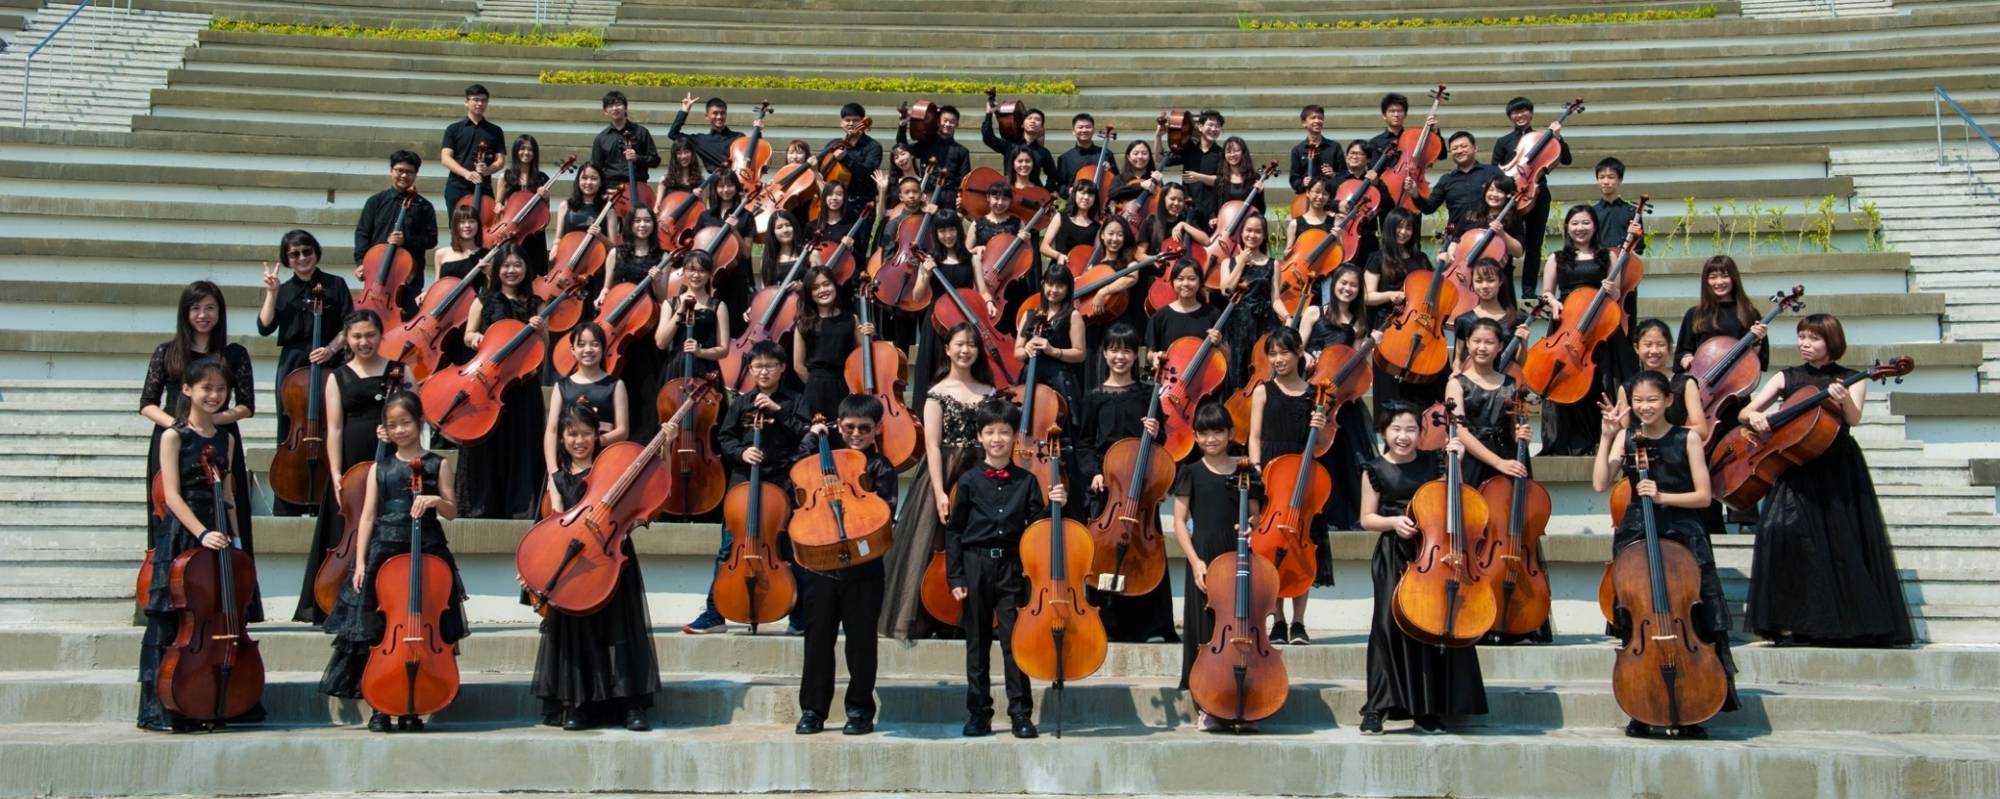 100把大提琴的美麗冒險-尋找台灣之聲